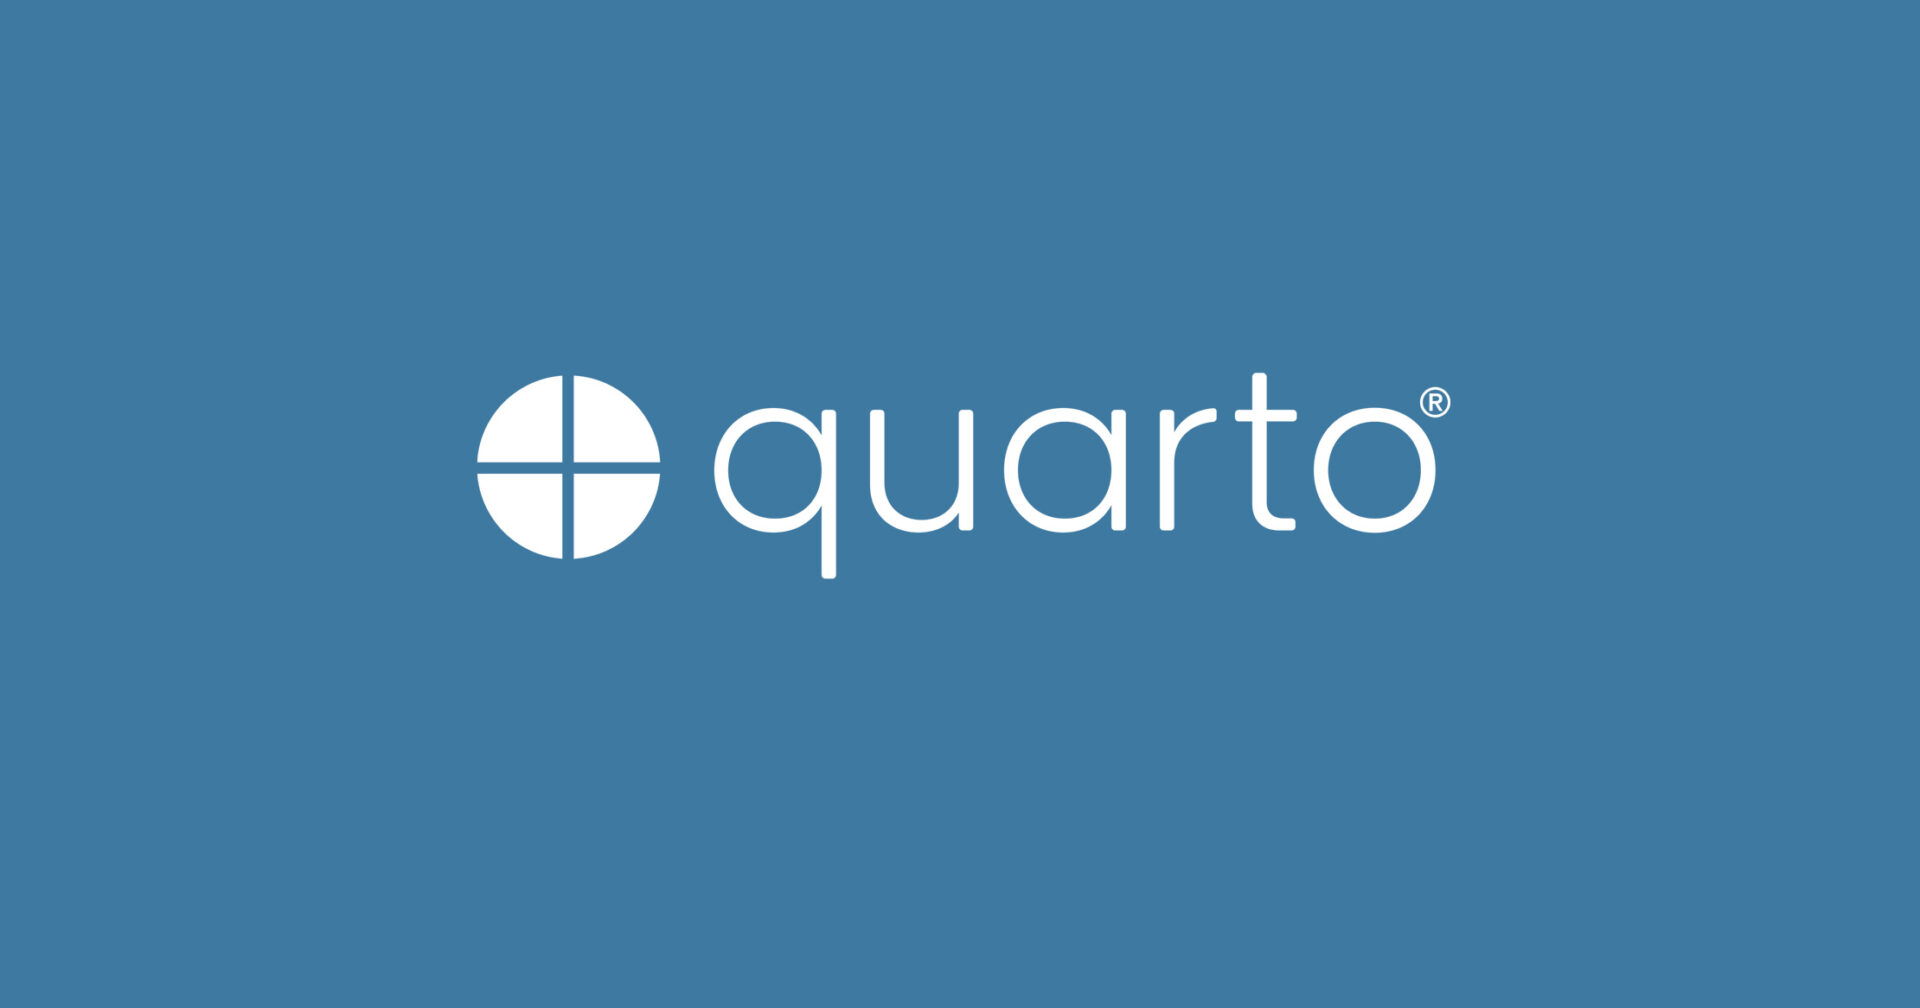 quarto logo made up of a circle split into four equal parts and the text quarto